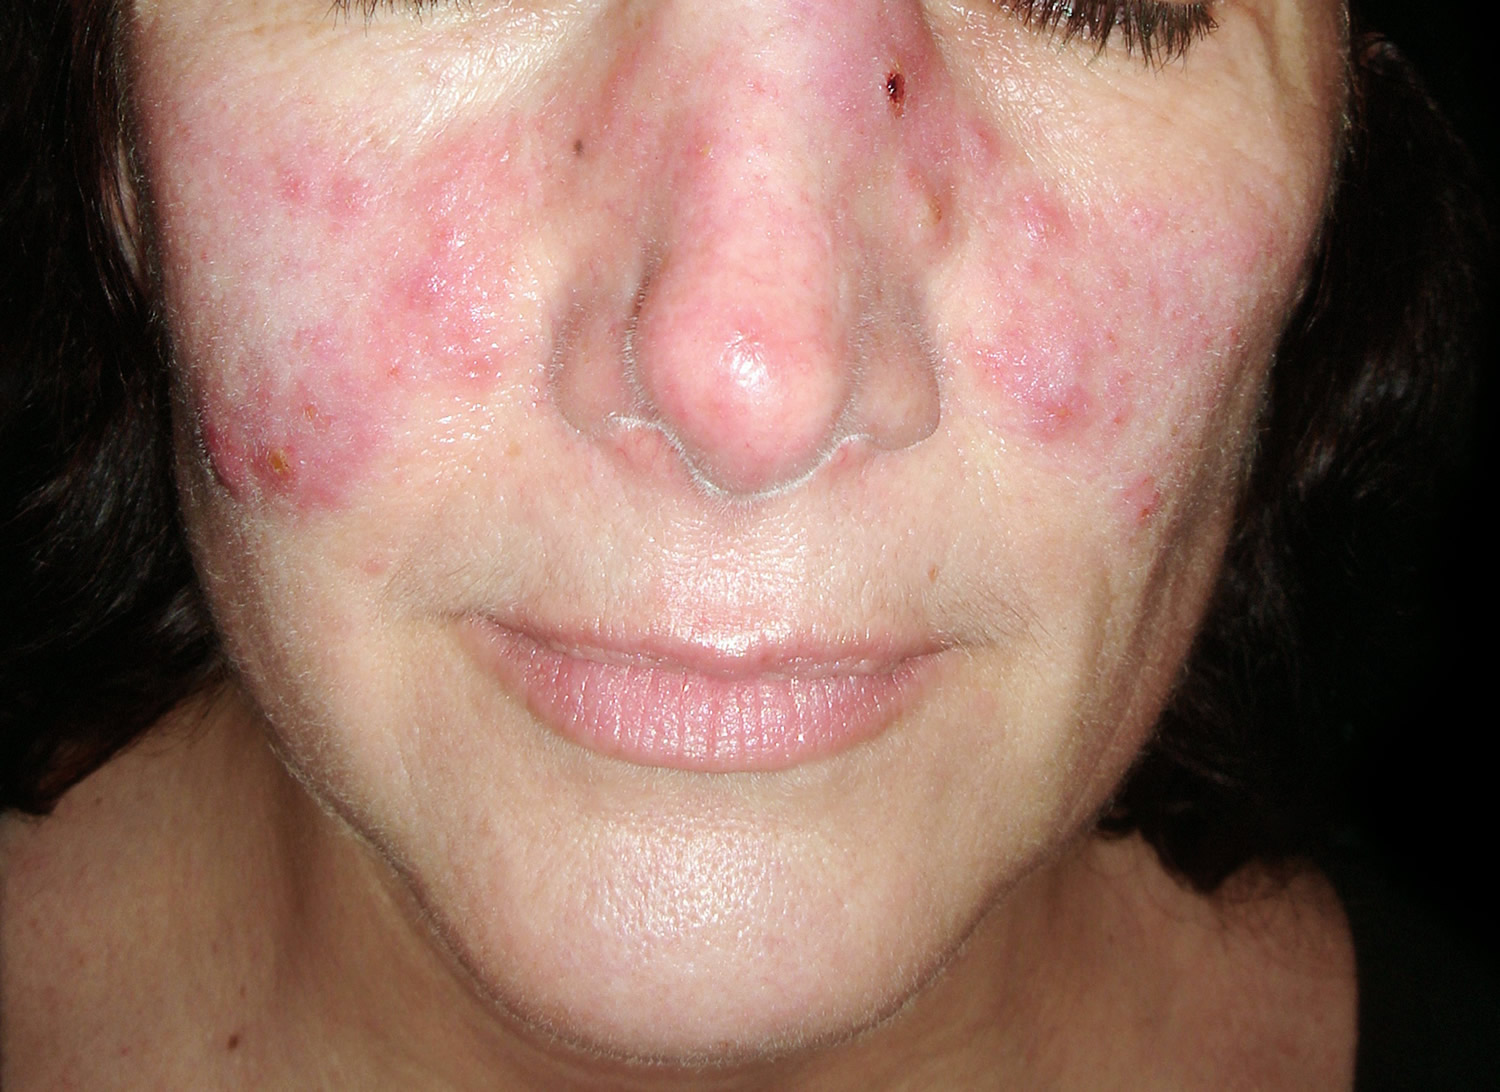 systemic lupus erythematosus malar rash